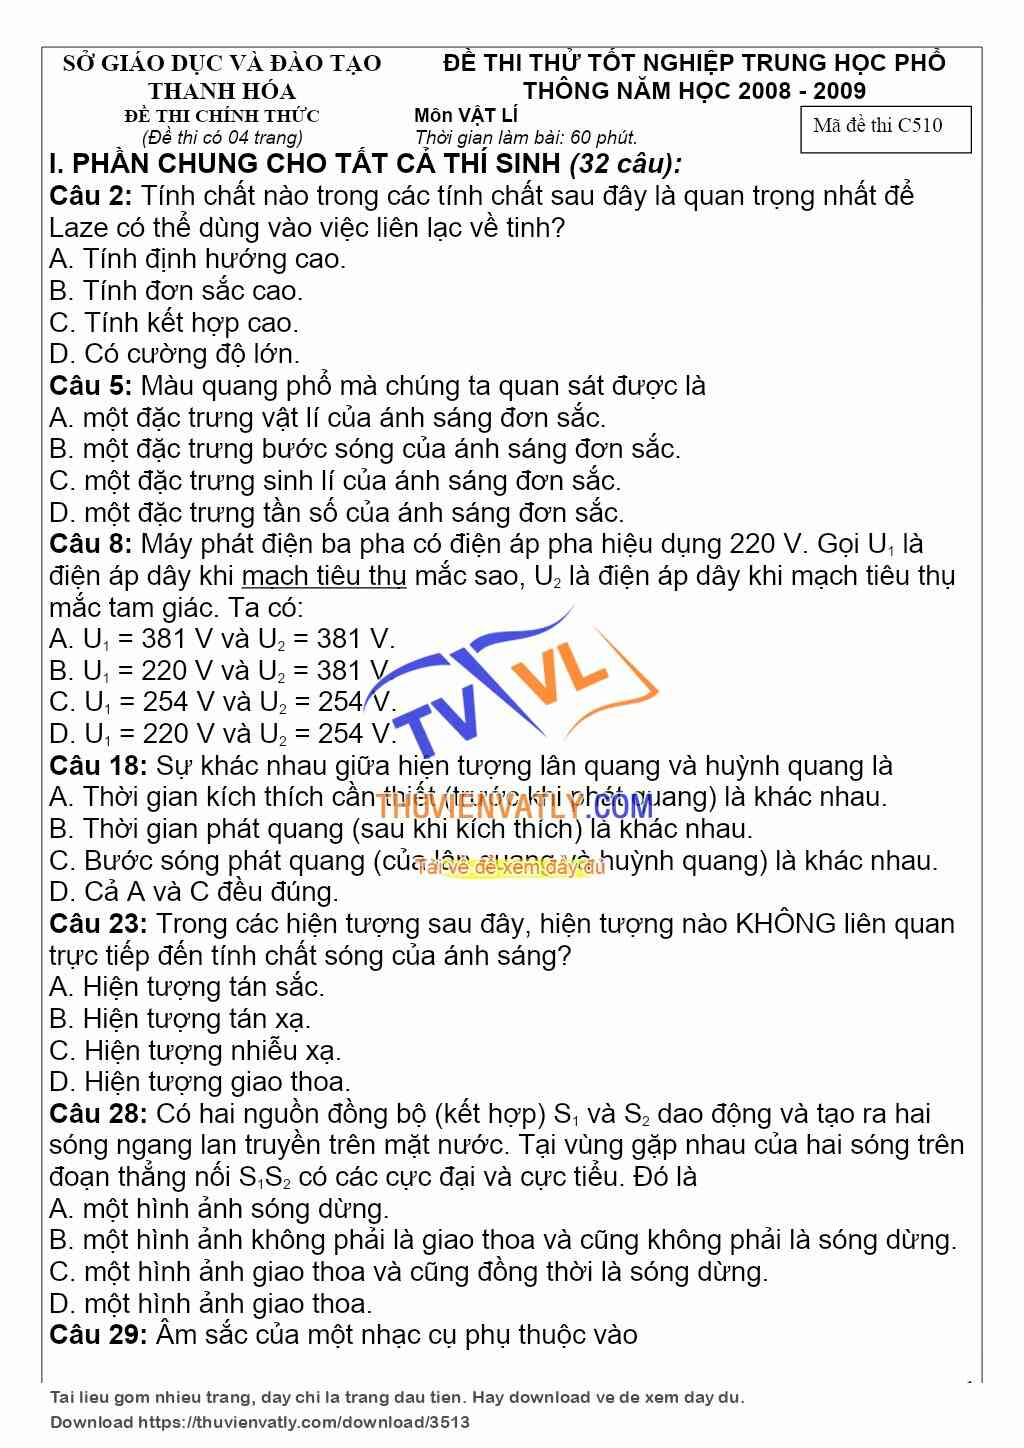 Bàn về đề thi thử TN 2009 của tỉnh Thanh Hóa